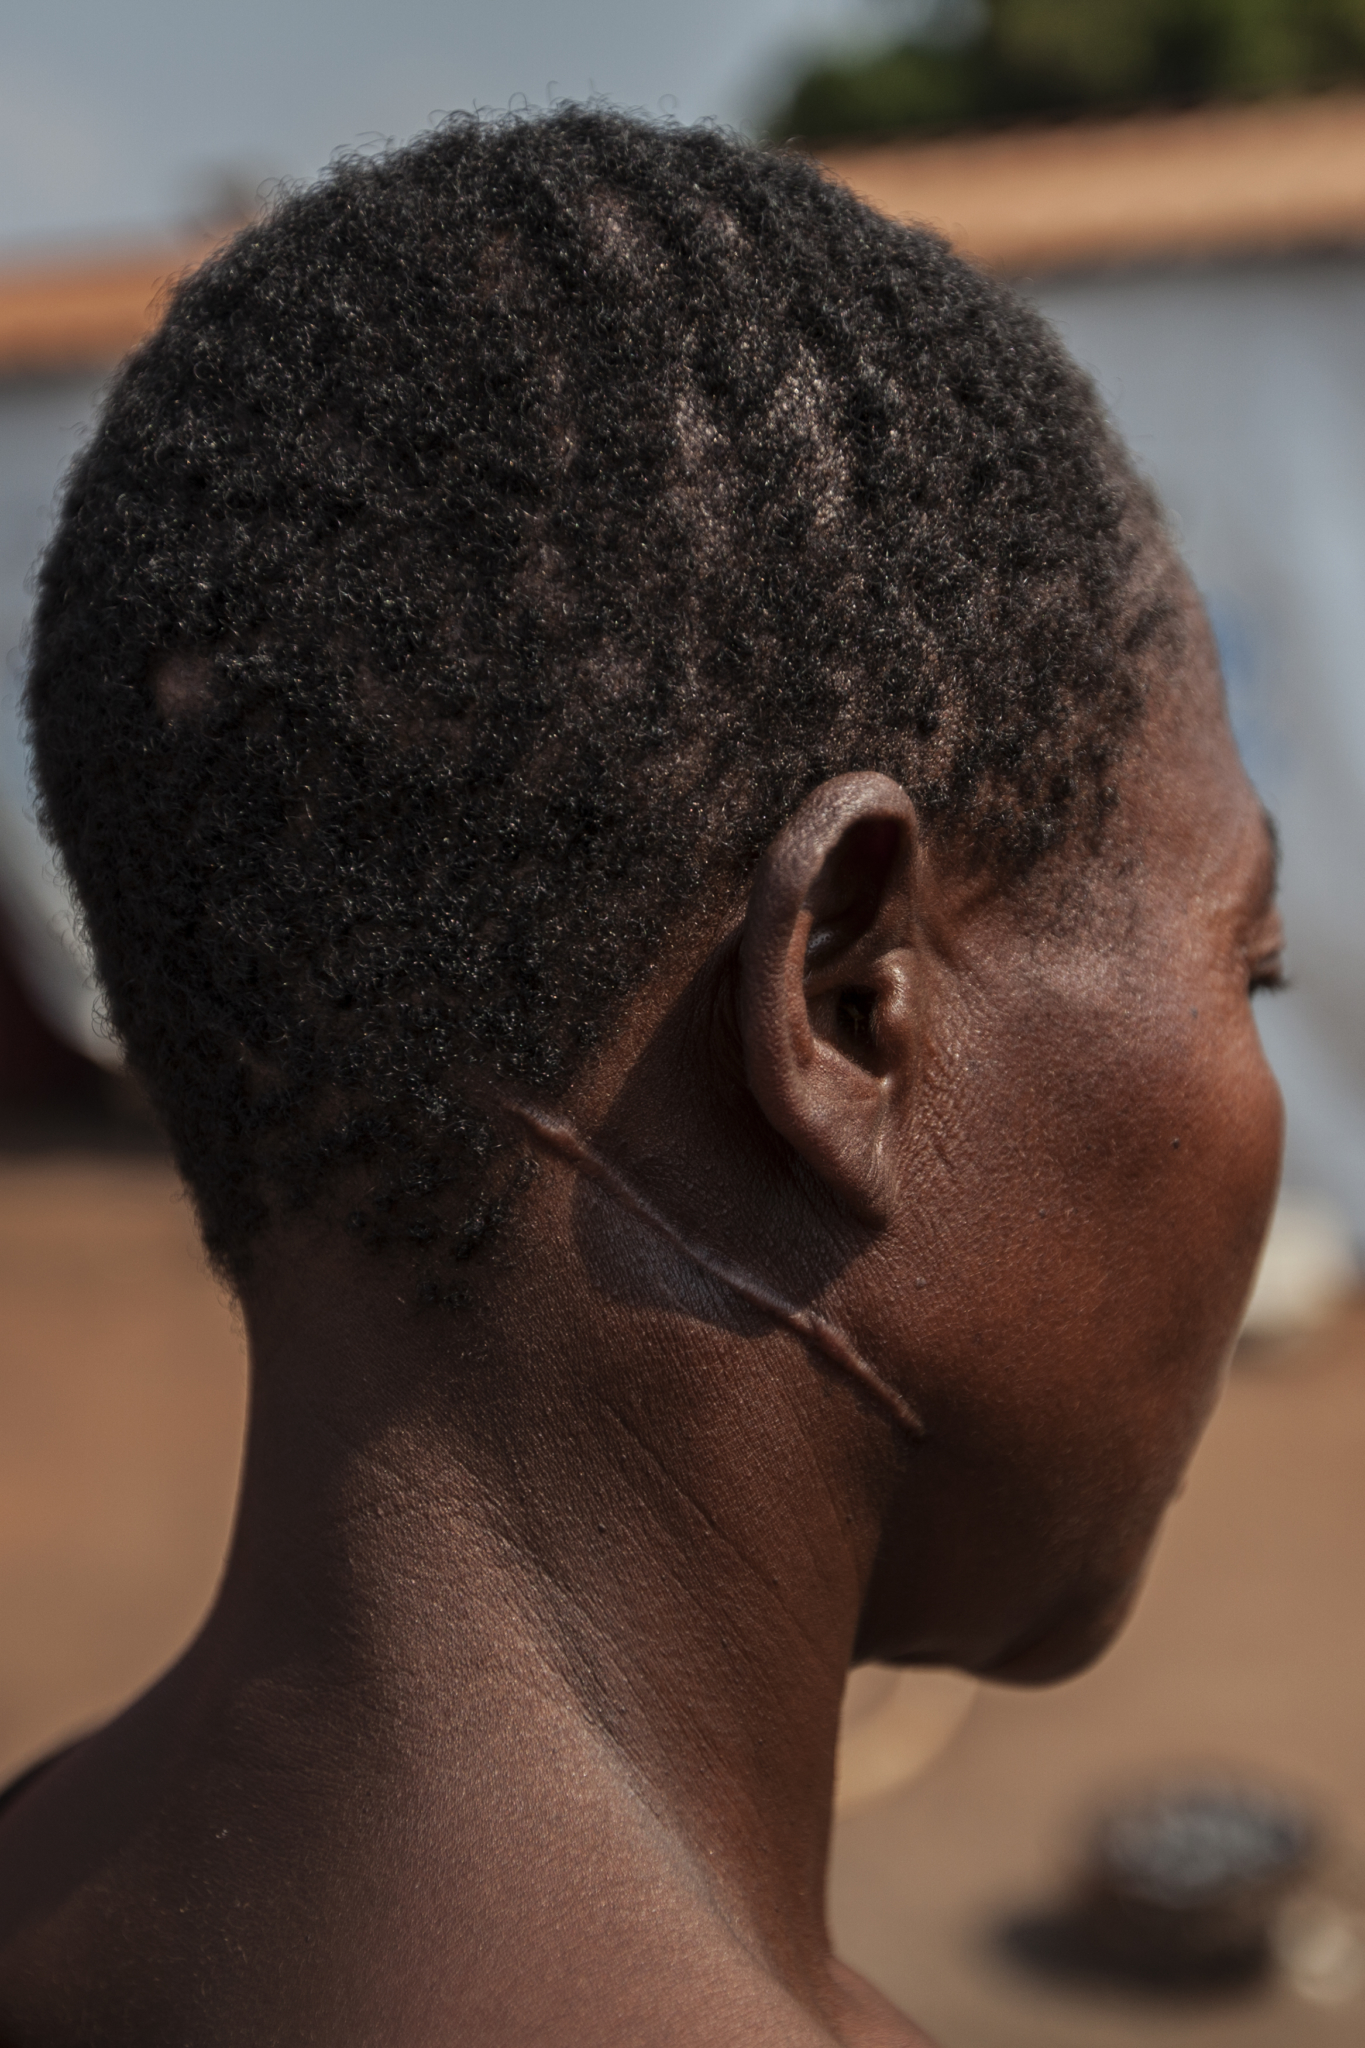 Uma refugiada no campo de Kakanda mostra a ferida traumática causada durante o conflito na República Democrática do Congo (RDC). MSF oferece serviços de saúde mental aos refugiados que necessitam, visto que muitos deles foram testemunhas ou vítimas diretas da violência.